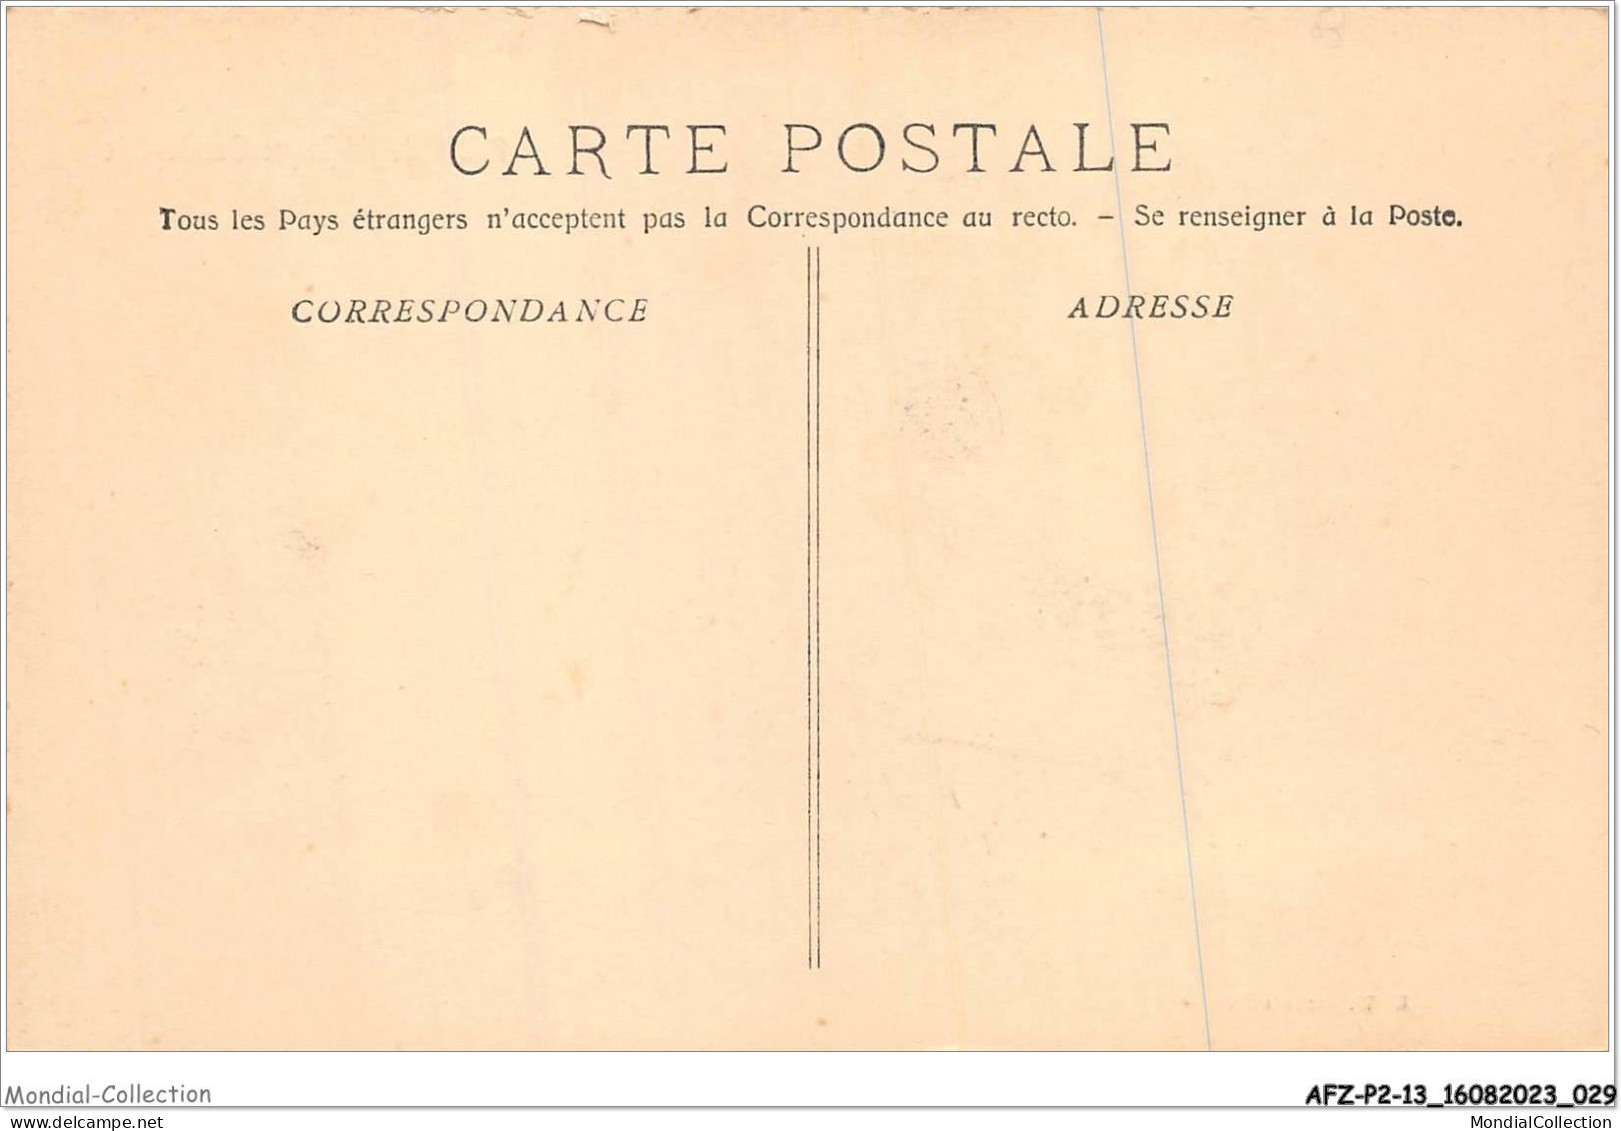 AFZP2-13-0098 - MARSEILLE - Exposition Coloniale - Palais De L'afrique Occidentale - Expositions Coloniales 1906 - 1922